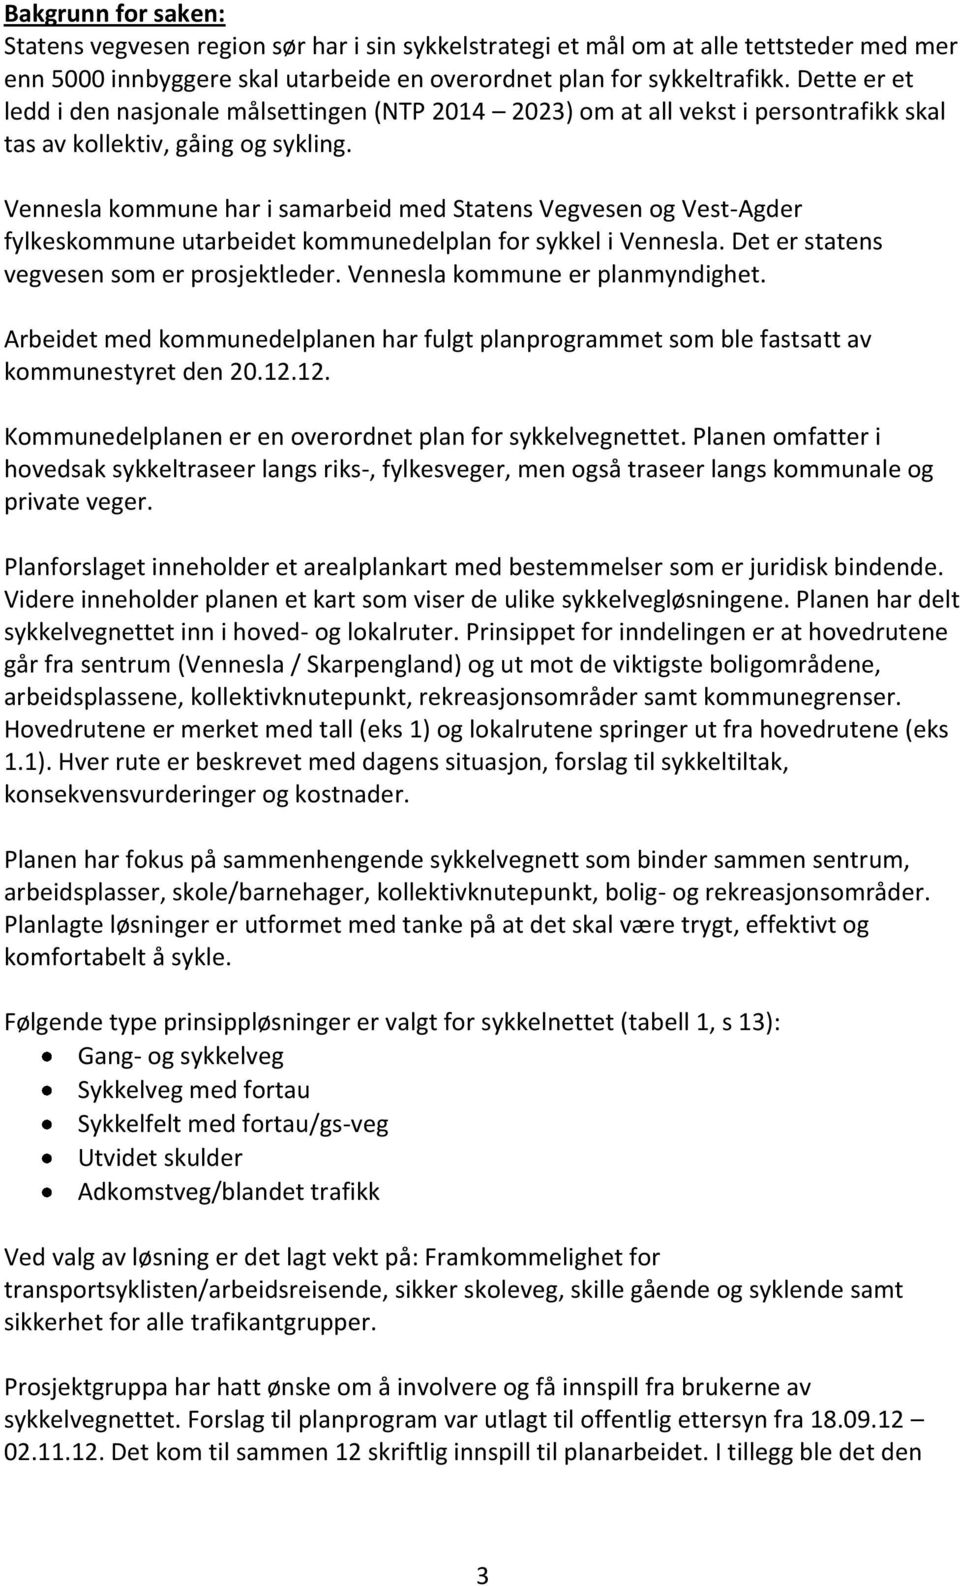 Vennesla kommune har i samarbeid med Statens Vegvesen og Vest-Agder fylkeskommune utarbeidet kommunedelplan for sykkel i Vennesla. Det er statens vegvesen som er prosjektleder.